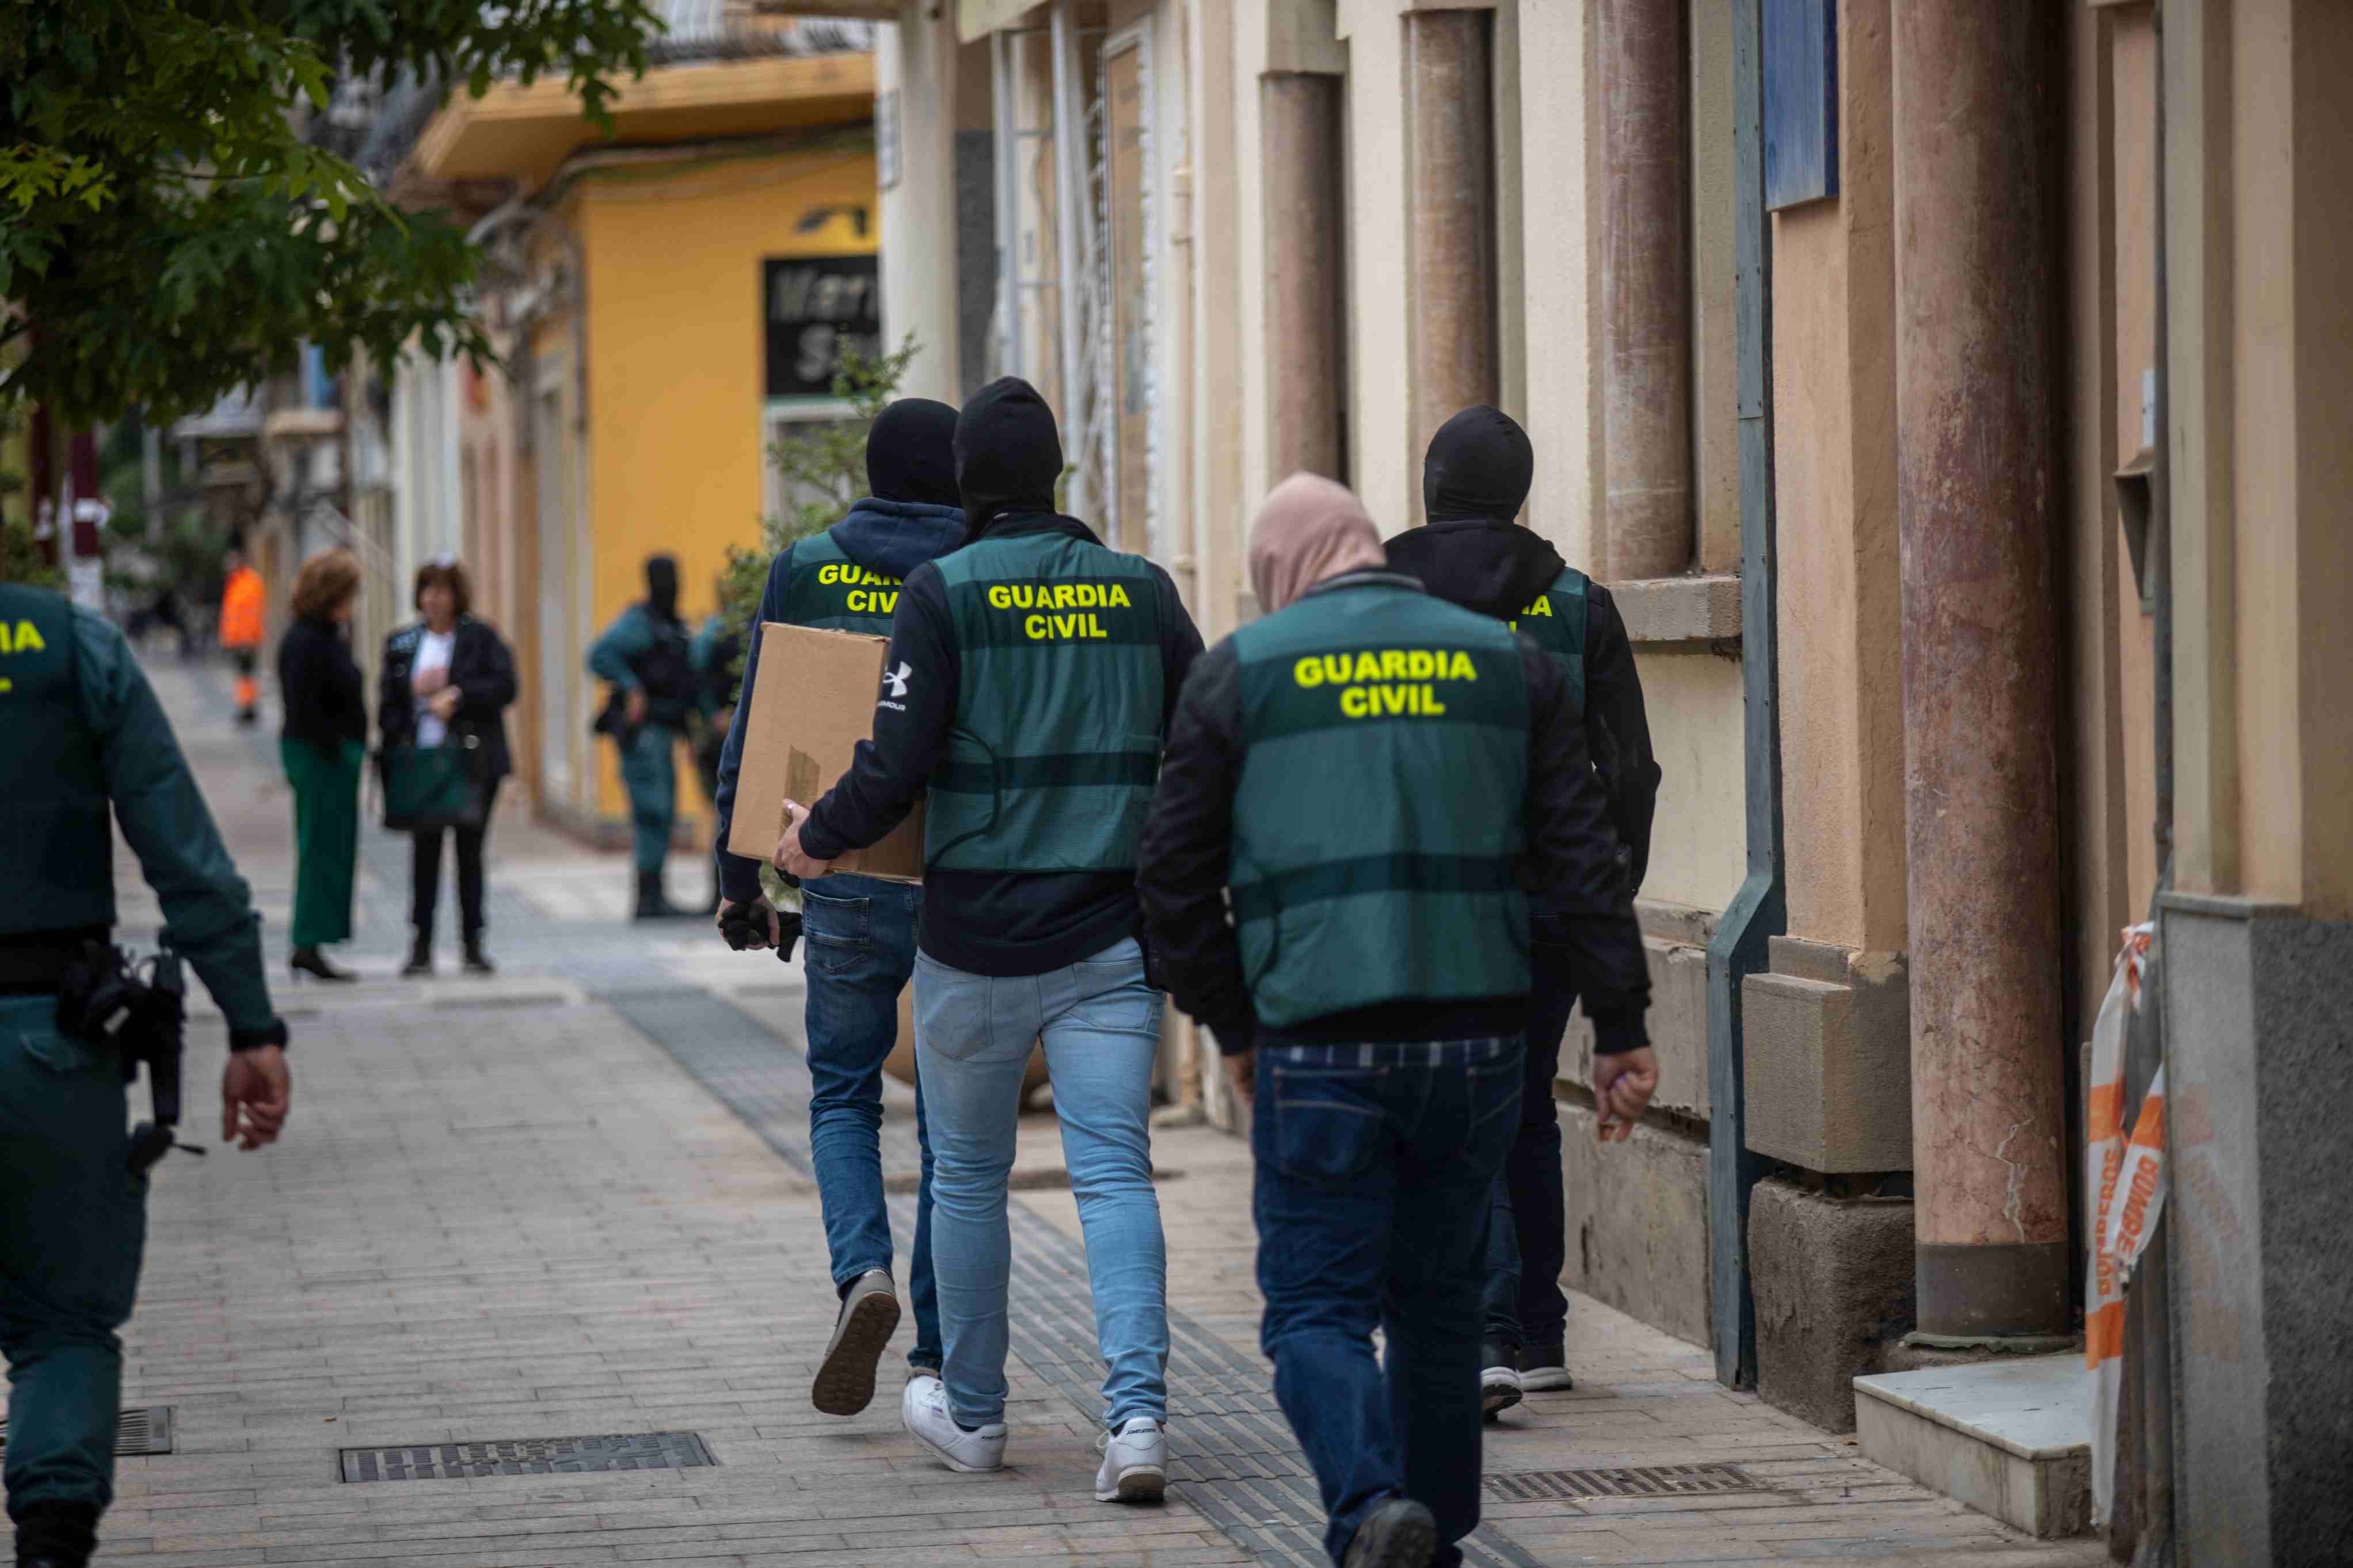 La Guardia Civil se repliega: desmontan el TEDAX de Lleida y la unidad de montaña de Puigcerdà